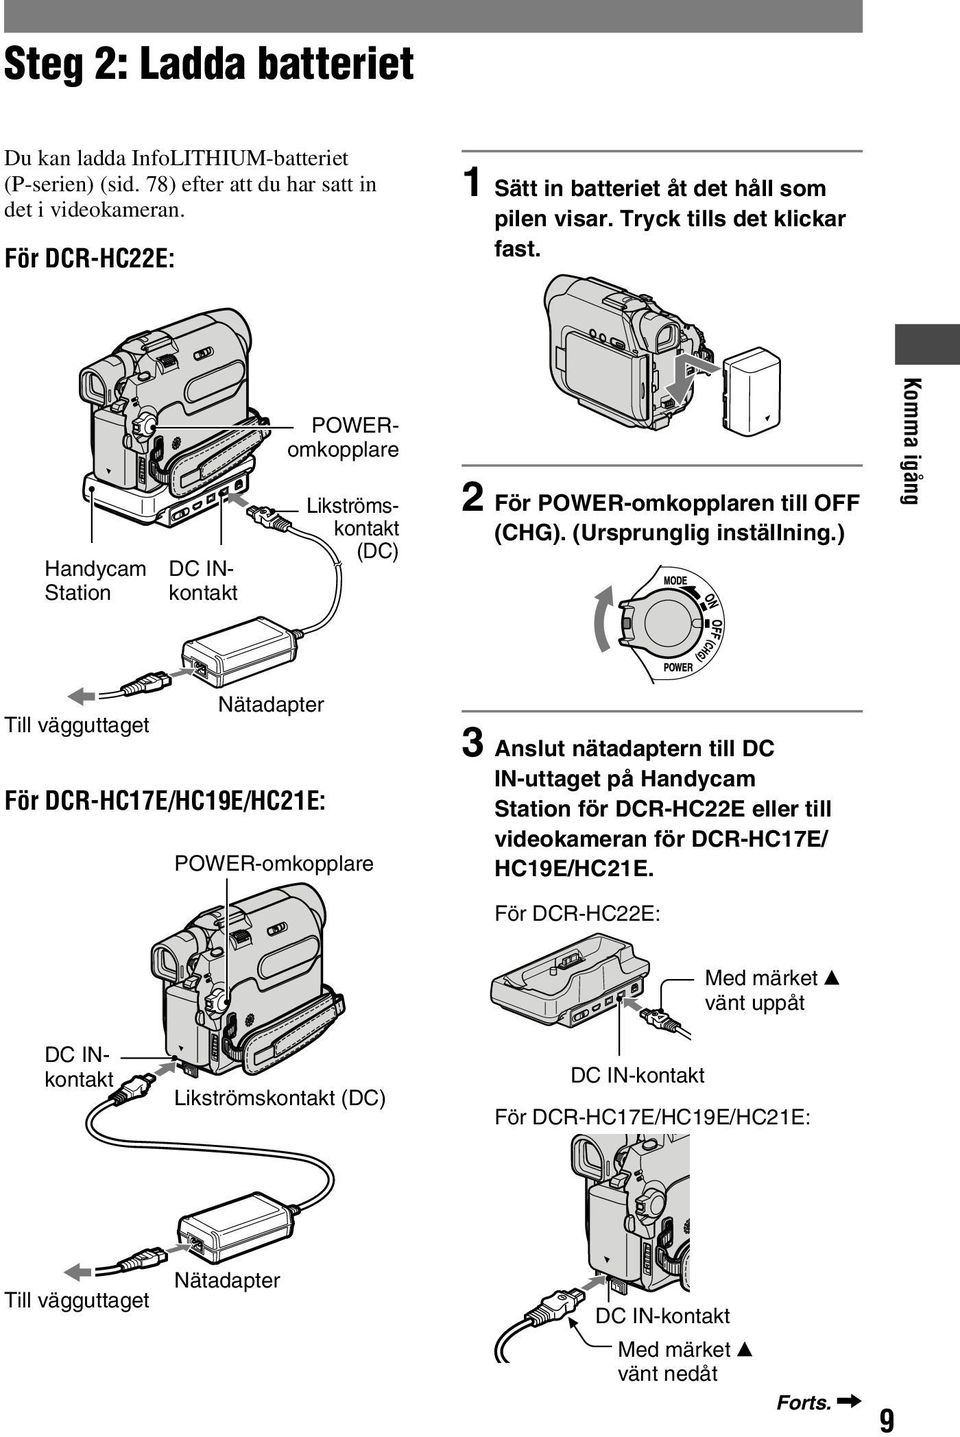 ) Komma igång Nätadapter Till vägguttaget För DCR-HC17E/HC19E/HC21E: POWER-omkopplare 3 Anslut nätadaptern till DC IN-uttaget på Handycam Station för DCR-HC22E eller till videokameran för